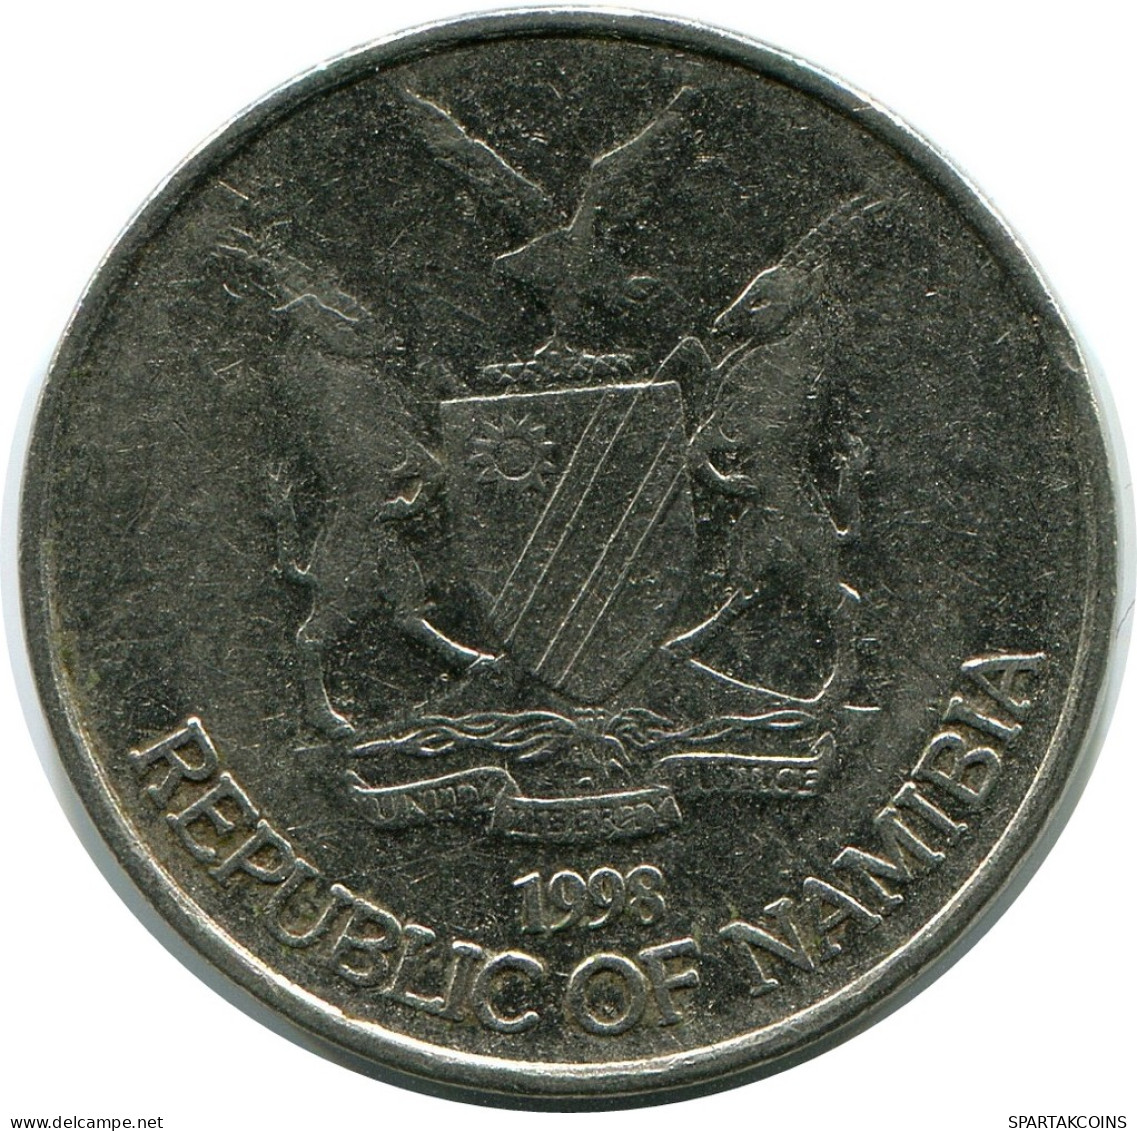 10 DOLLARS 1998 NAMIBIA Coin #AP913.U - Namibia